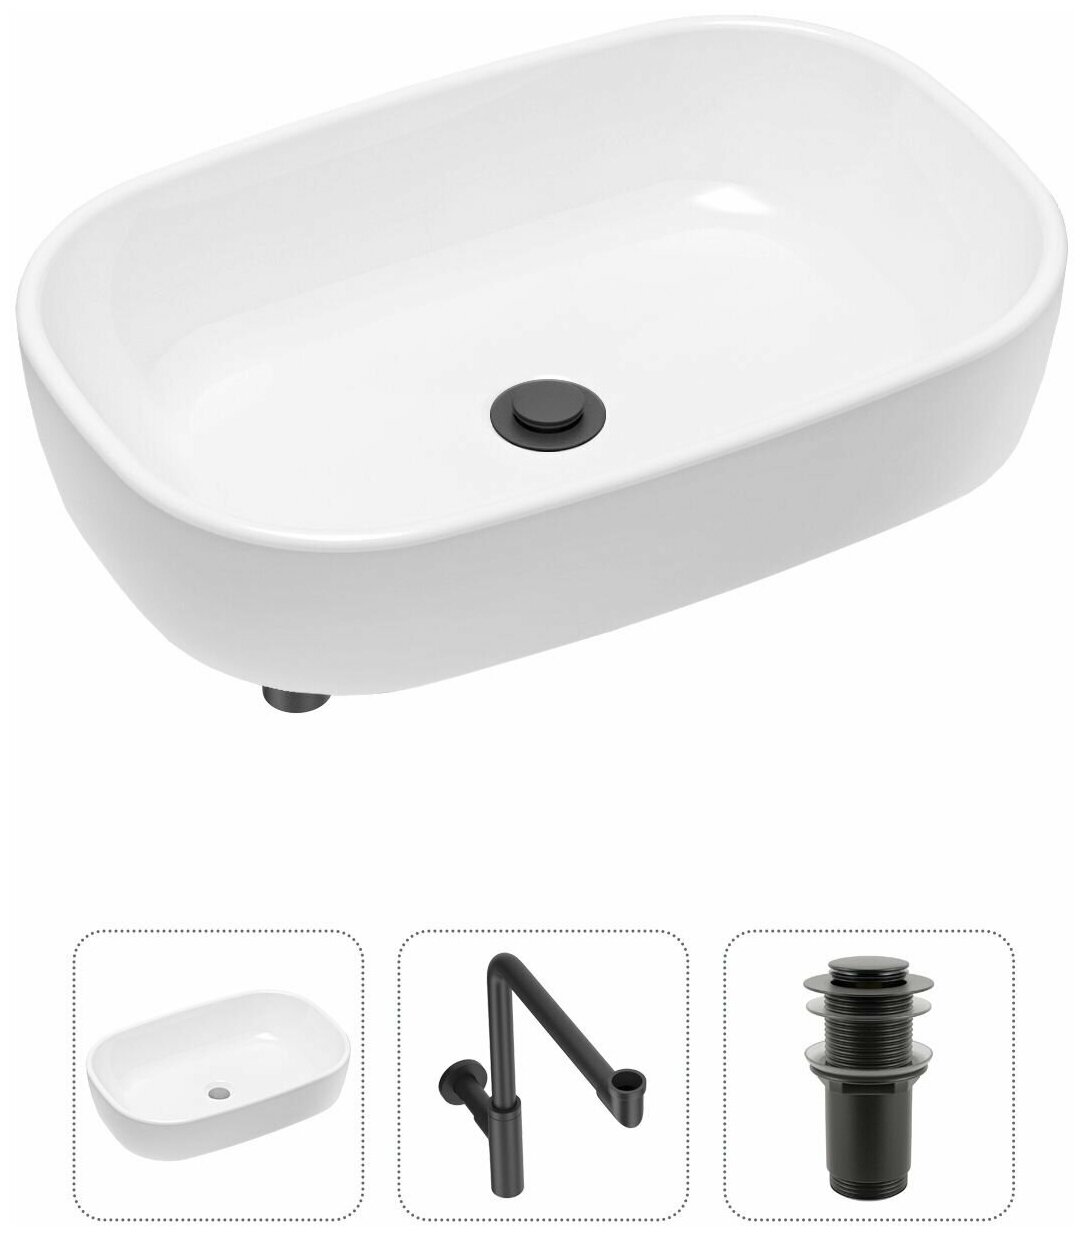 Комплект 3 в 1 Lavinia Boho Bathroom Sink 21520047: накладная фарфоровая раковина 54 см, металлический сифон, донный клапан - фотография № 1